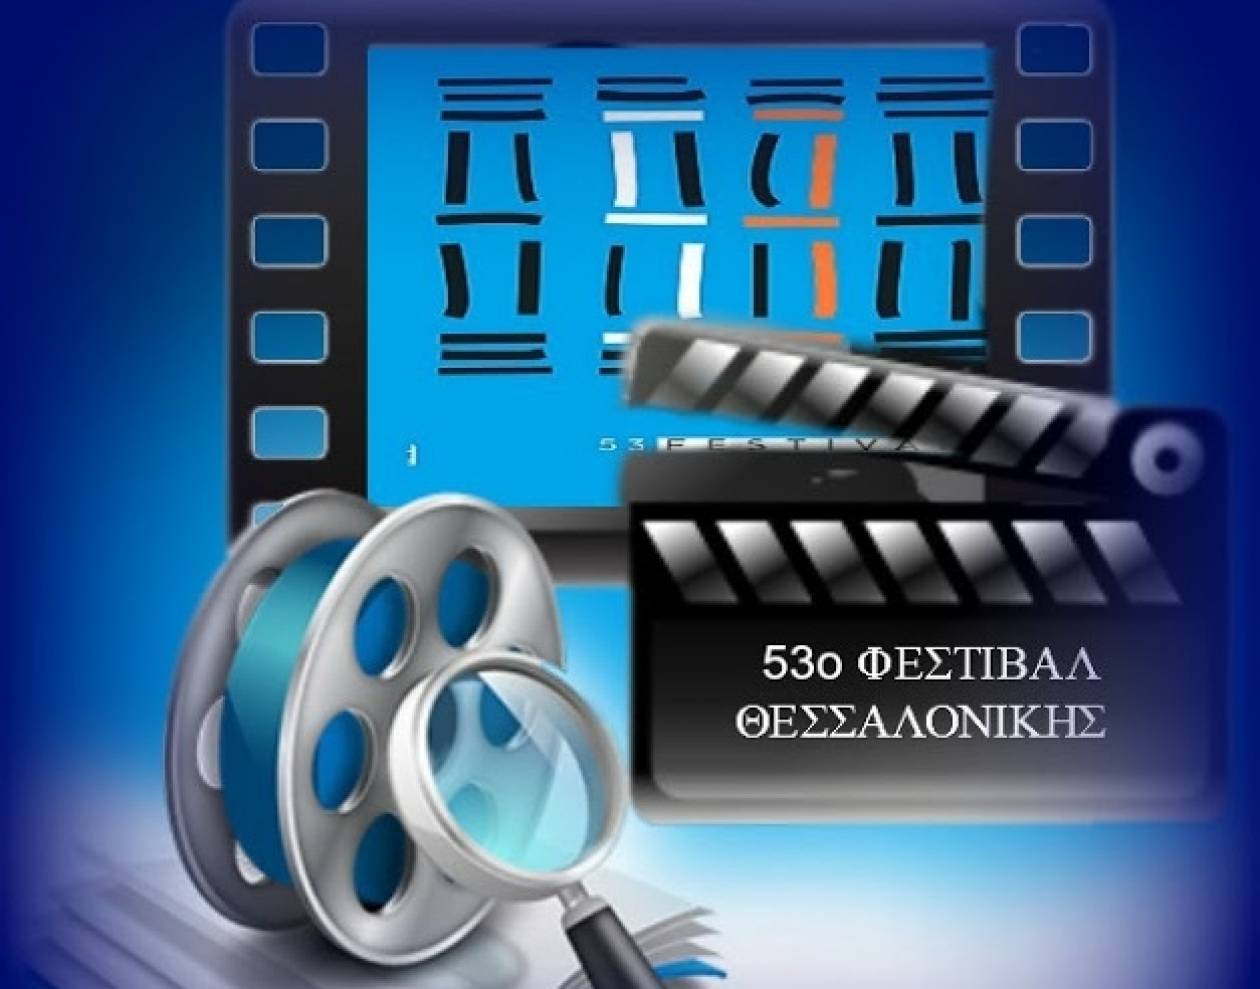 Πρεμιέρα αύριο για το 53ο Φεστιβάλ Κινηματογράφου Θεσσαλονίκης